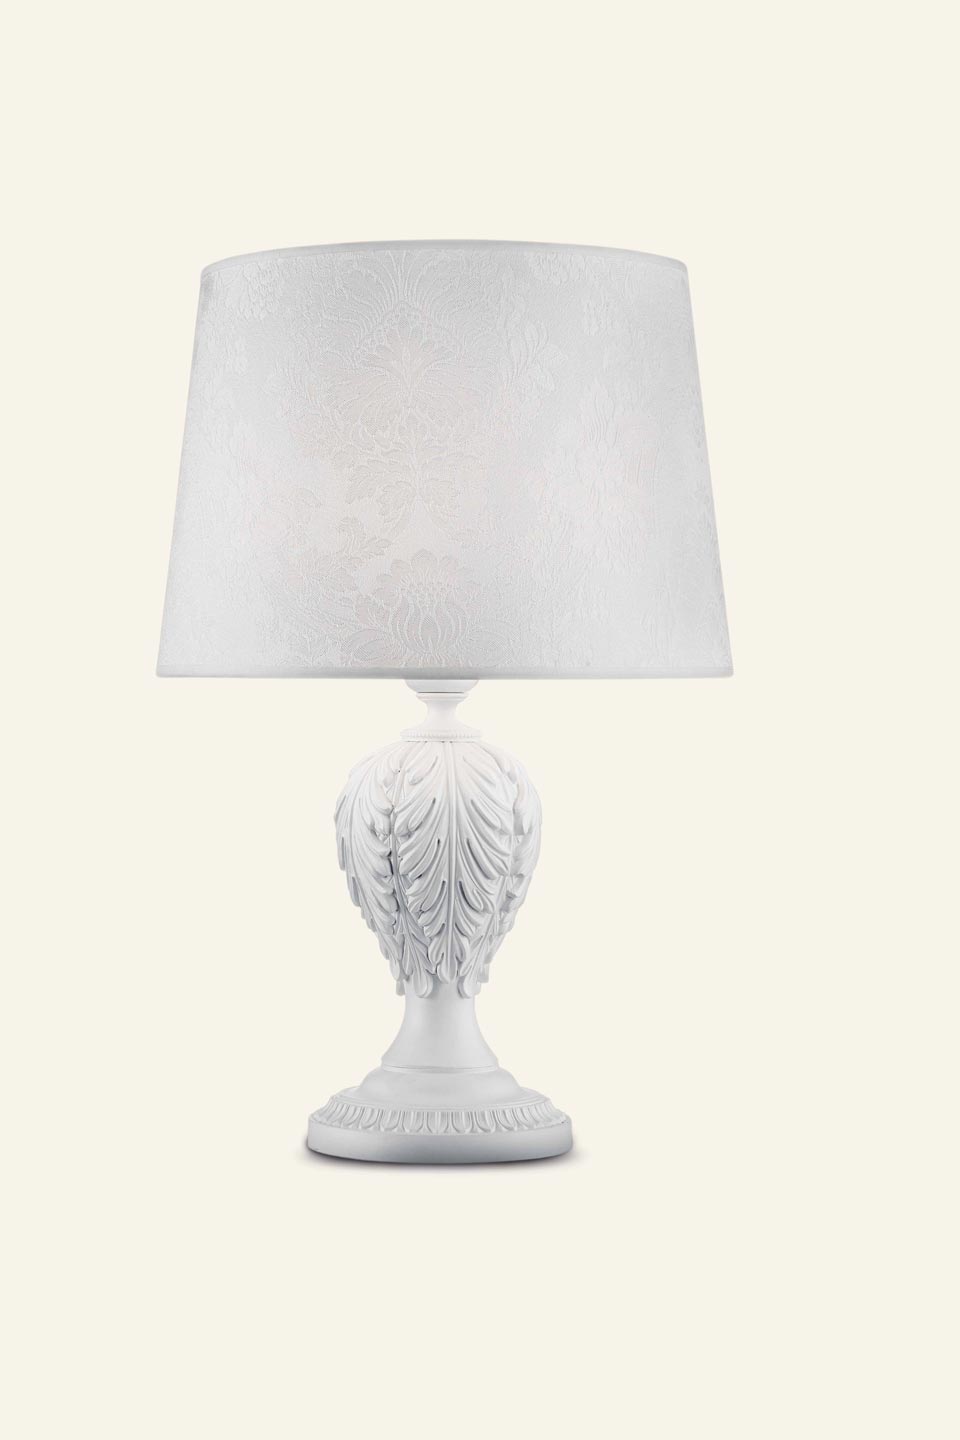 Acantia classic white table lamp. Masiero. 